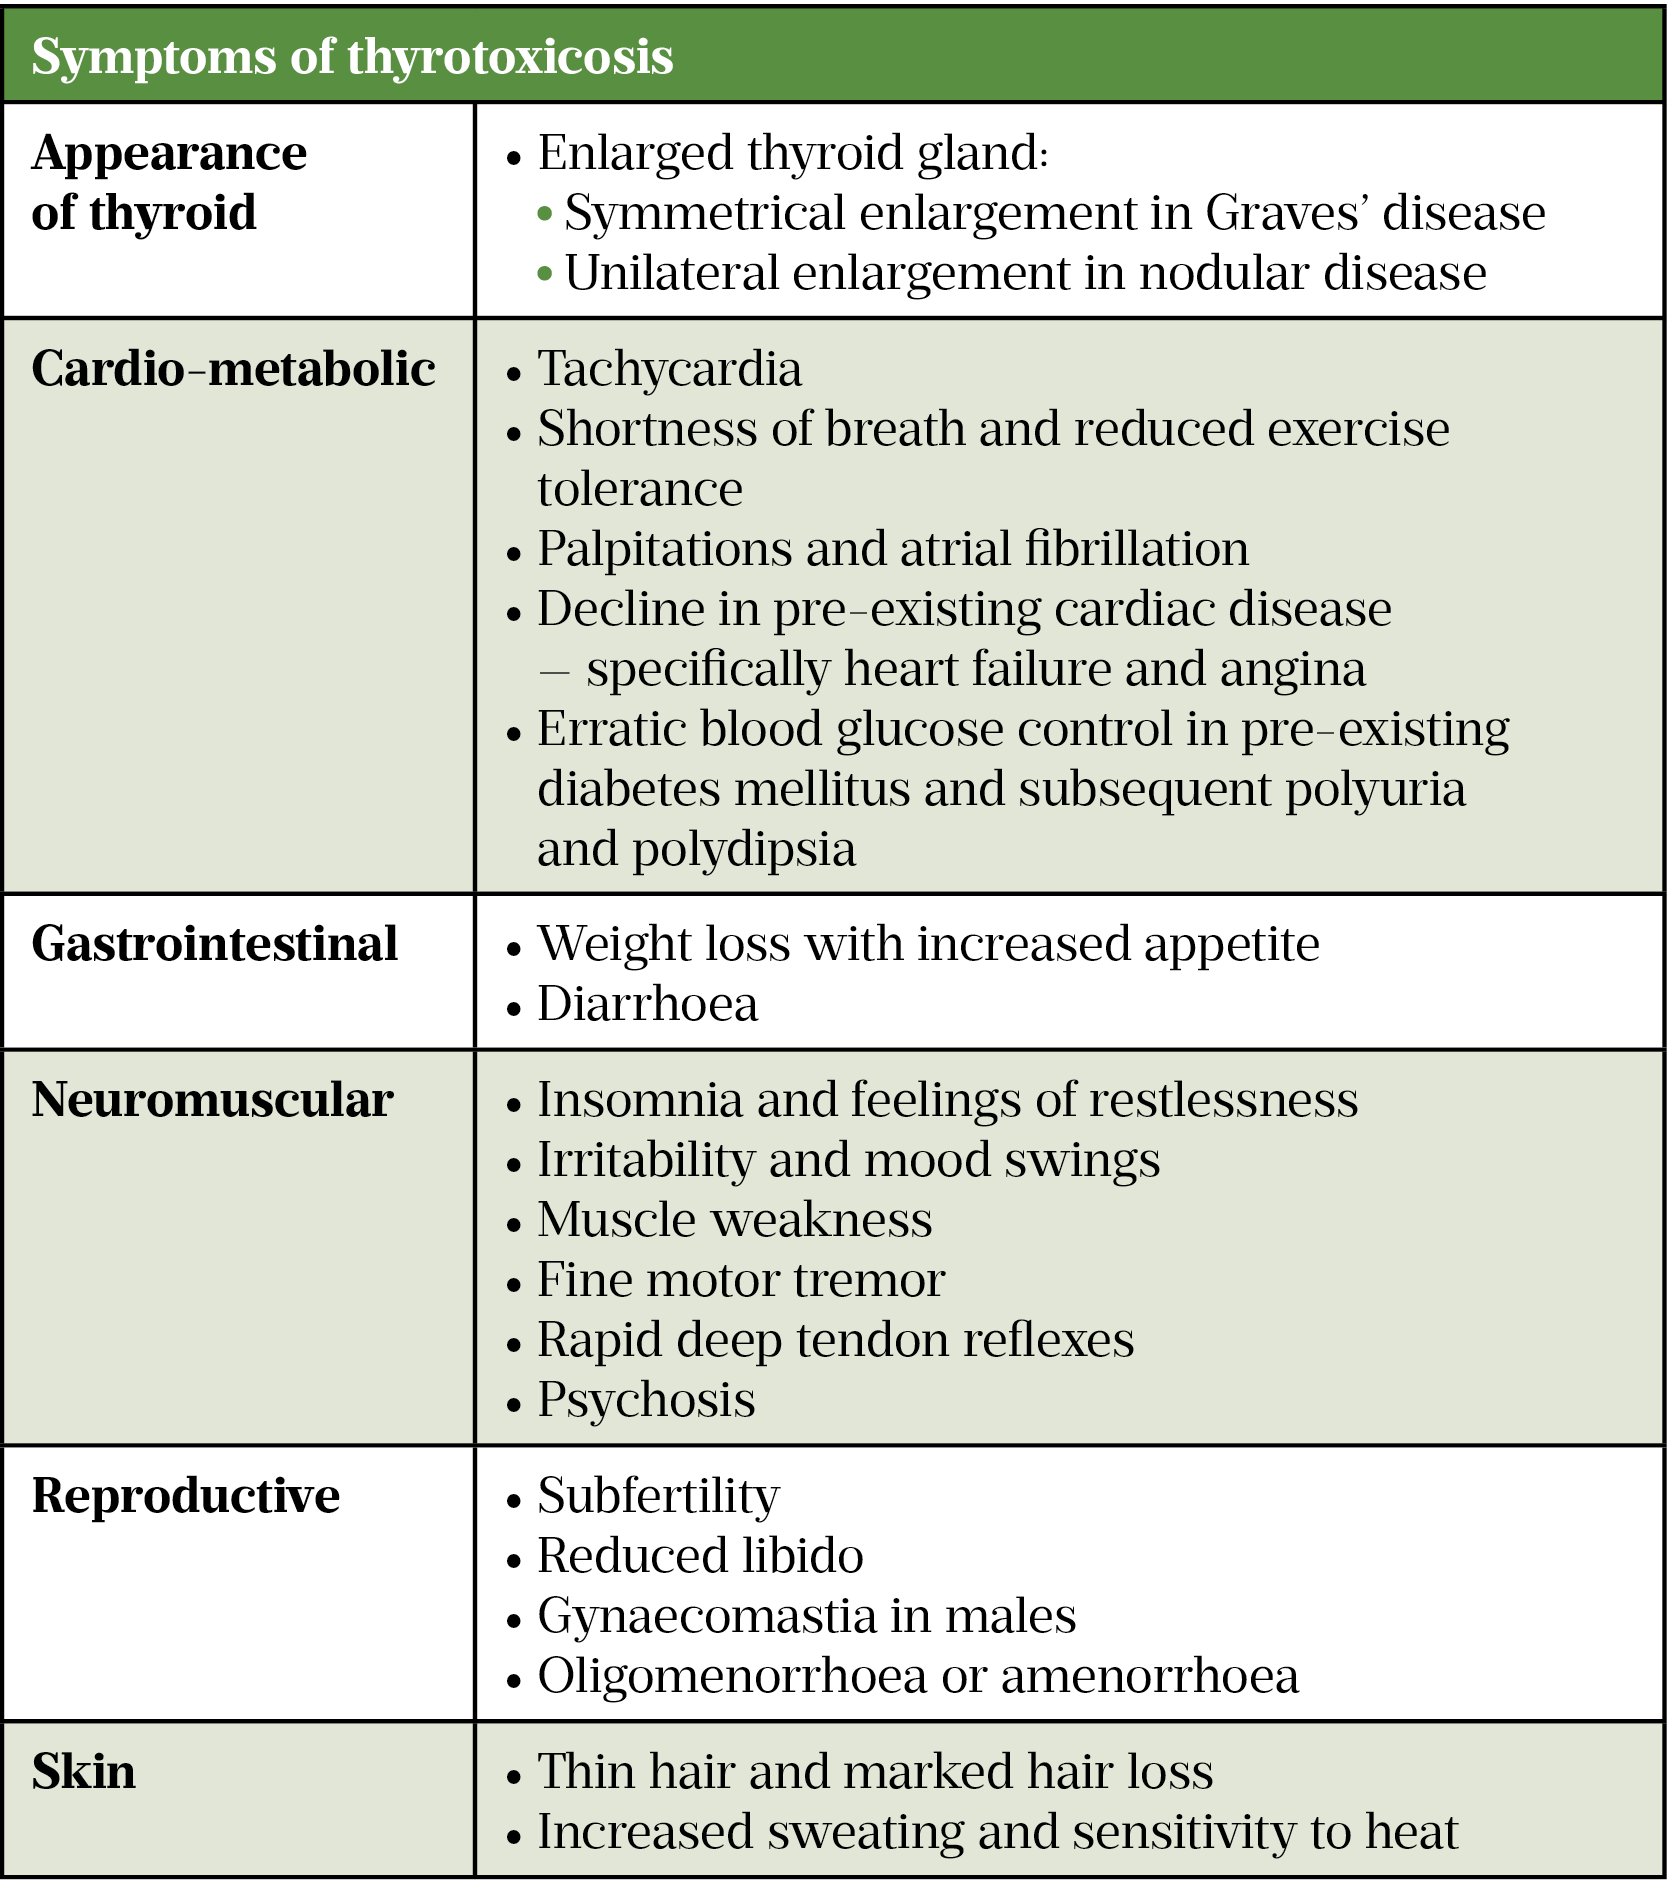 Table 1: Symptoms of thyrotoxicosis